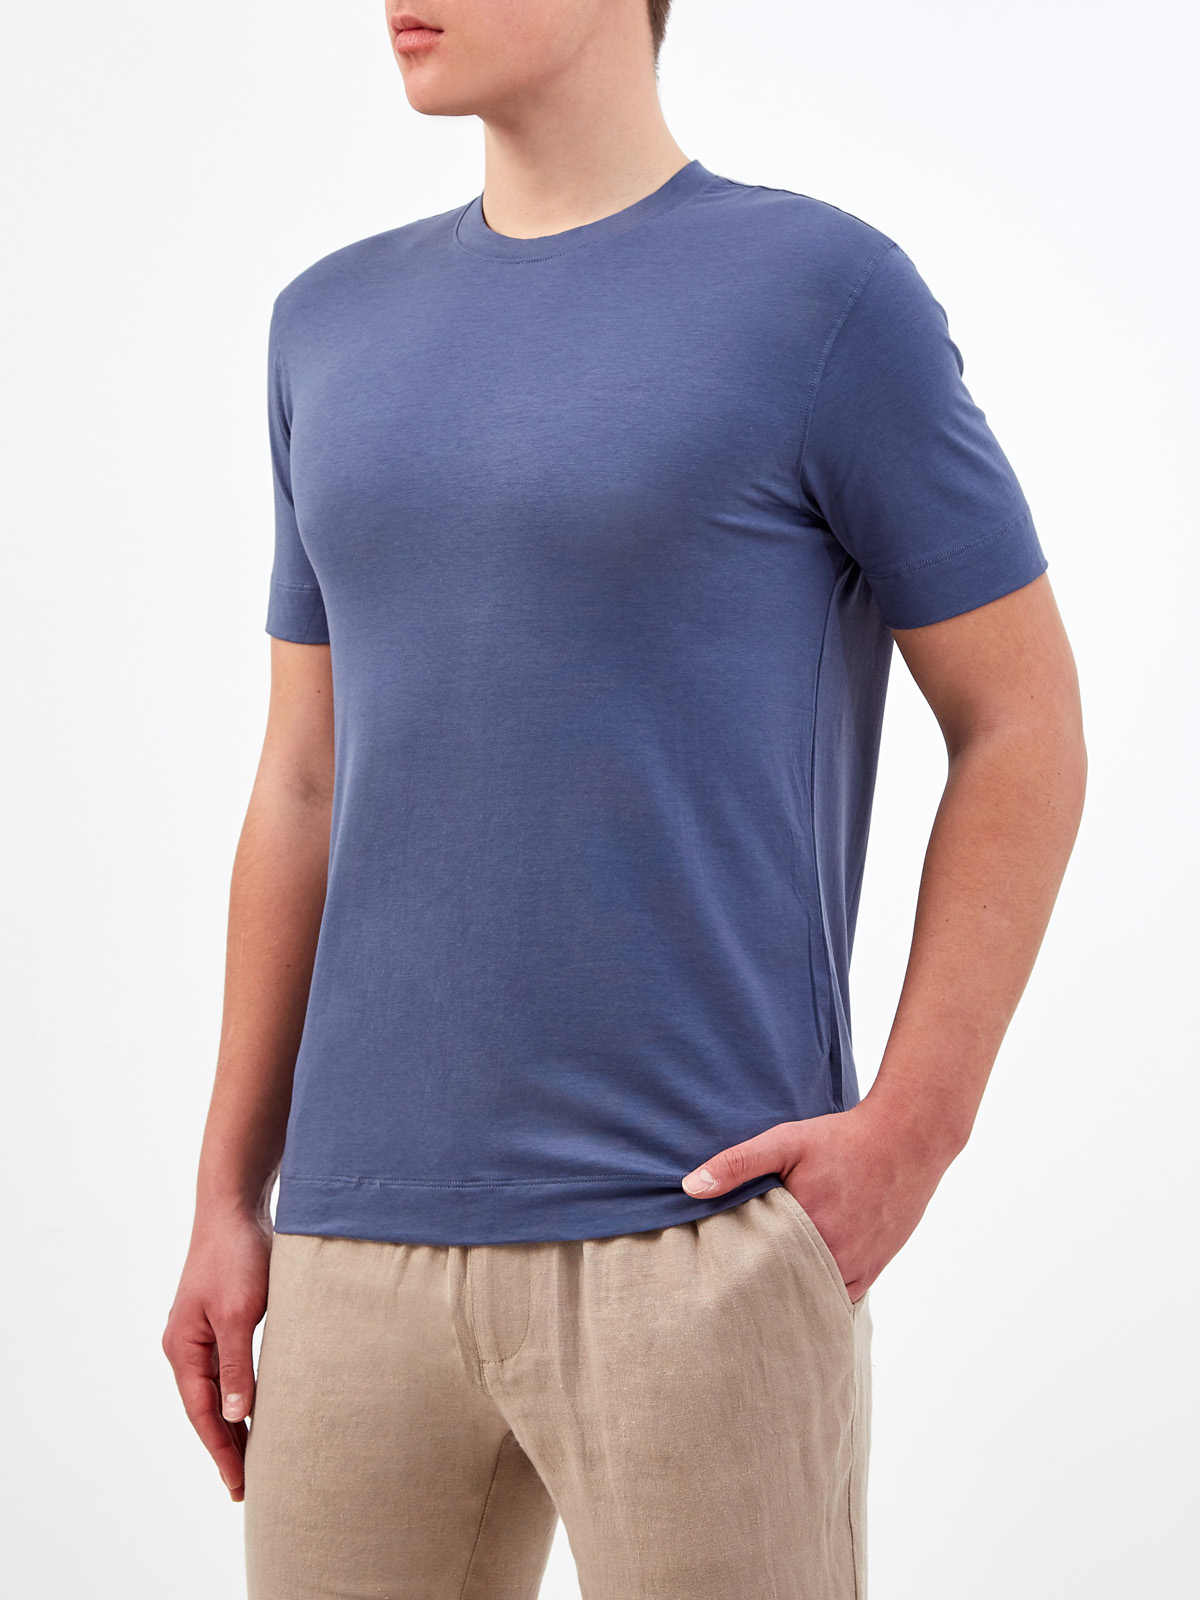 Однотонная футболка из джерси на основе хлопка и лиоцелла CUDGI, цвет синий, размер L;XL;2XL;3XL;M - фото 3